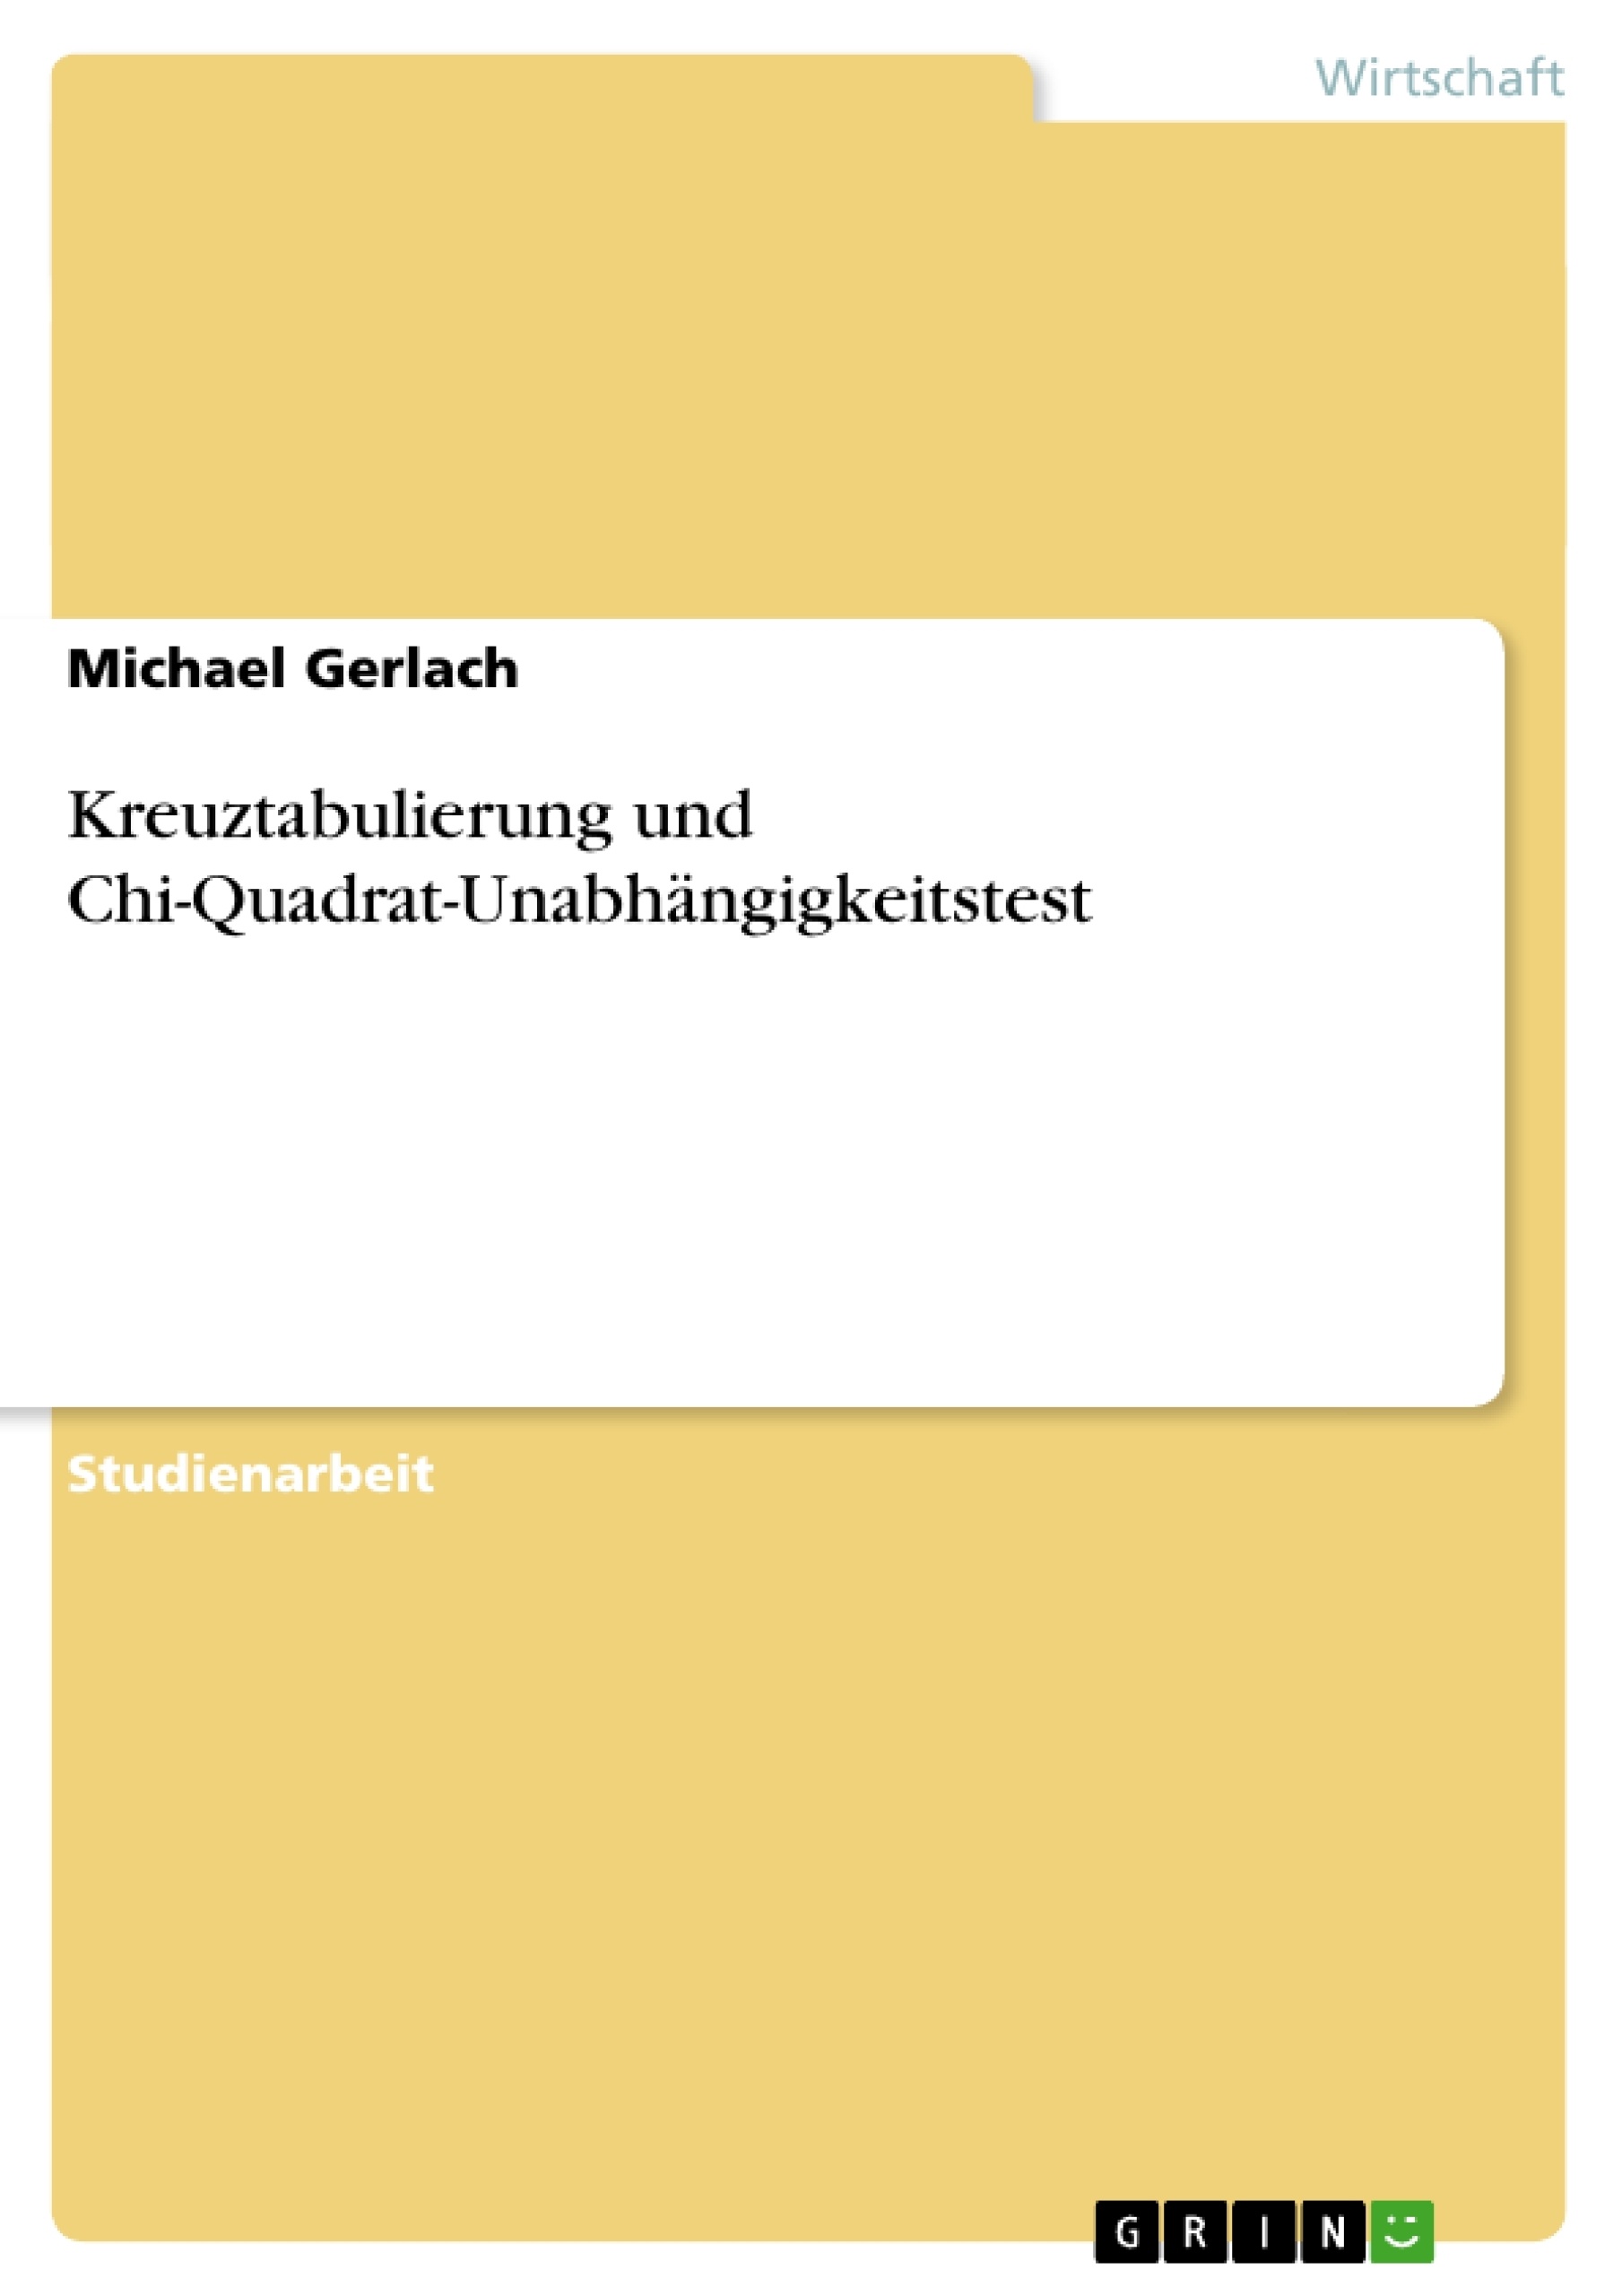 Title: Kreuztabulierung und Chi-Quadrat-Unabhängigkeitstest